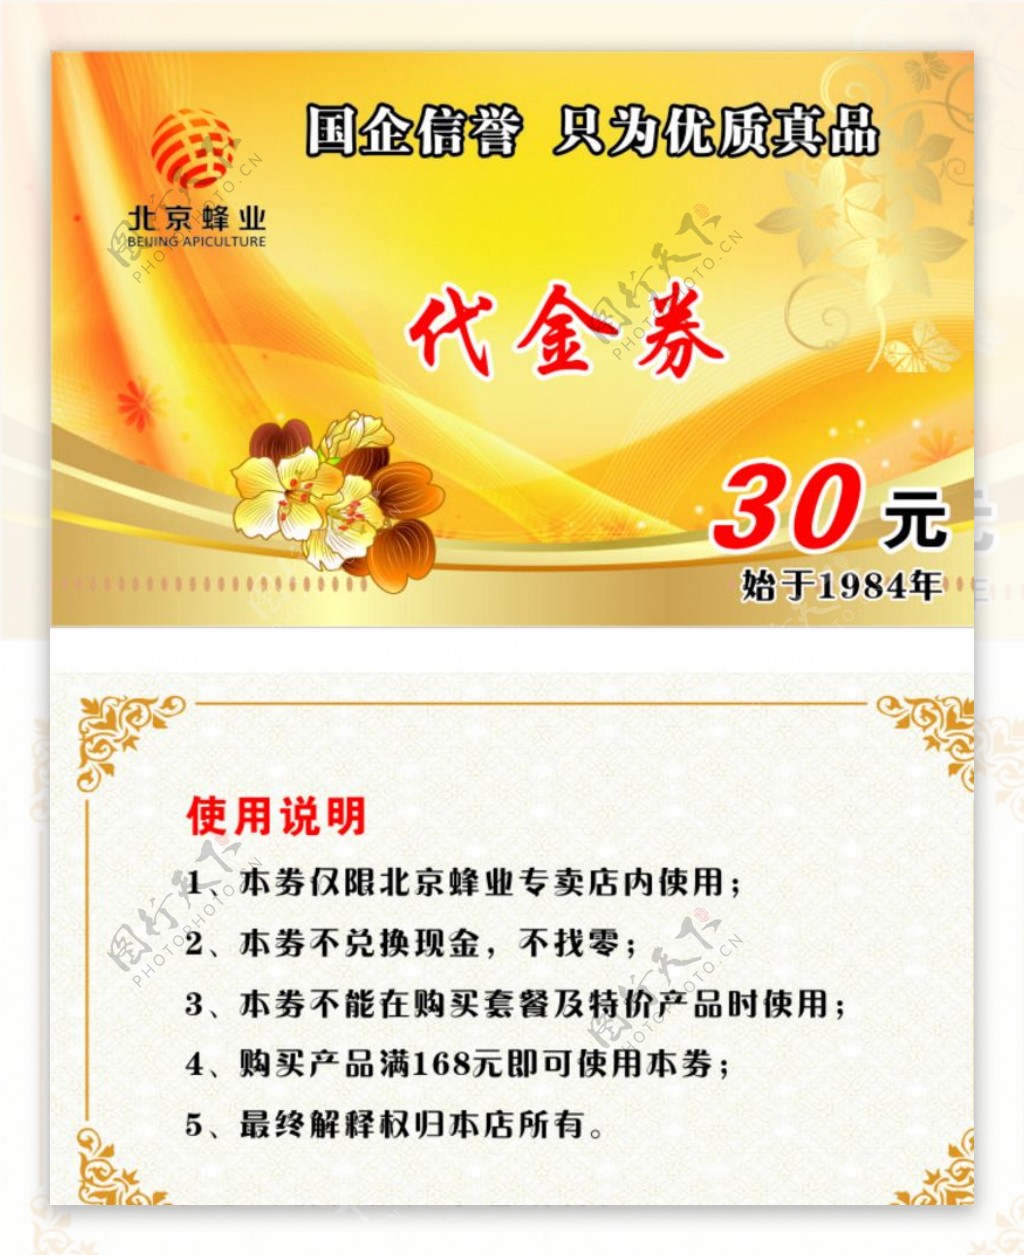 北京蜂业代金券名片图片